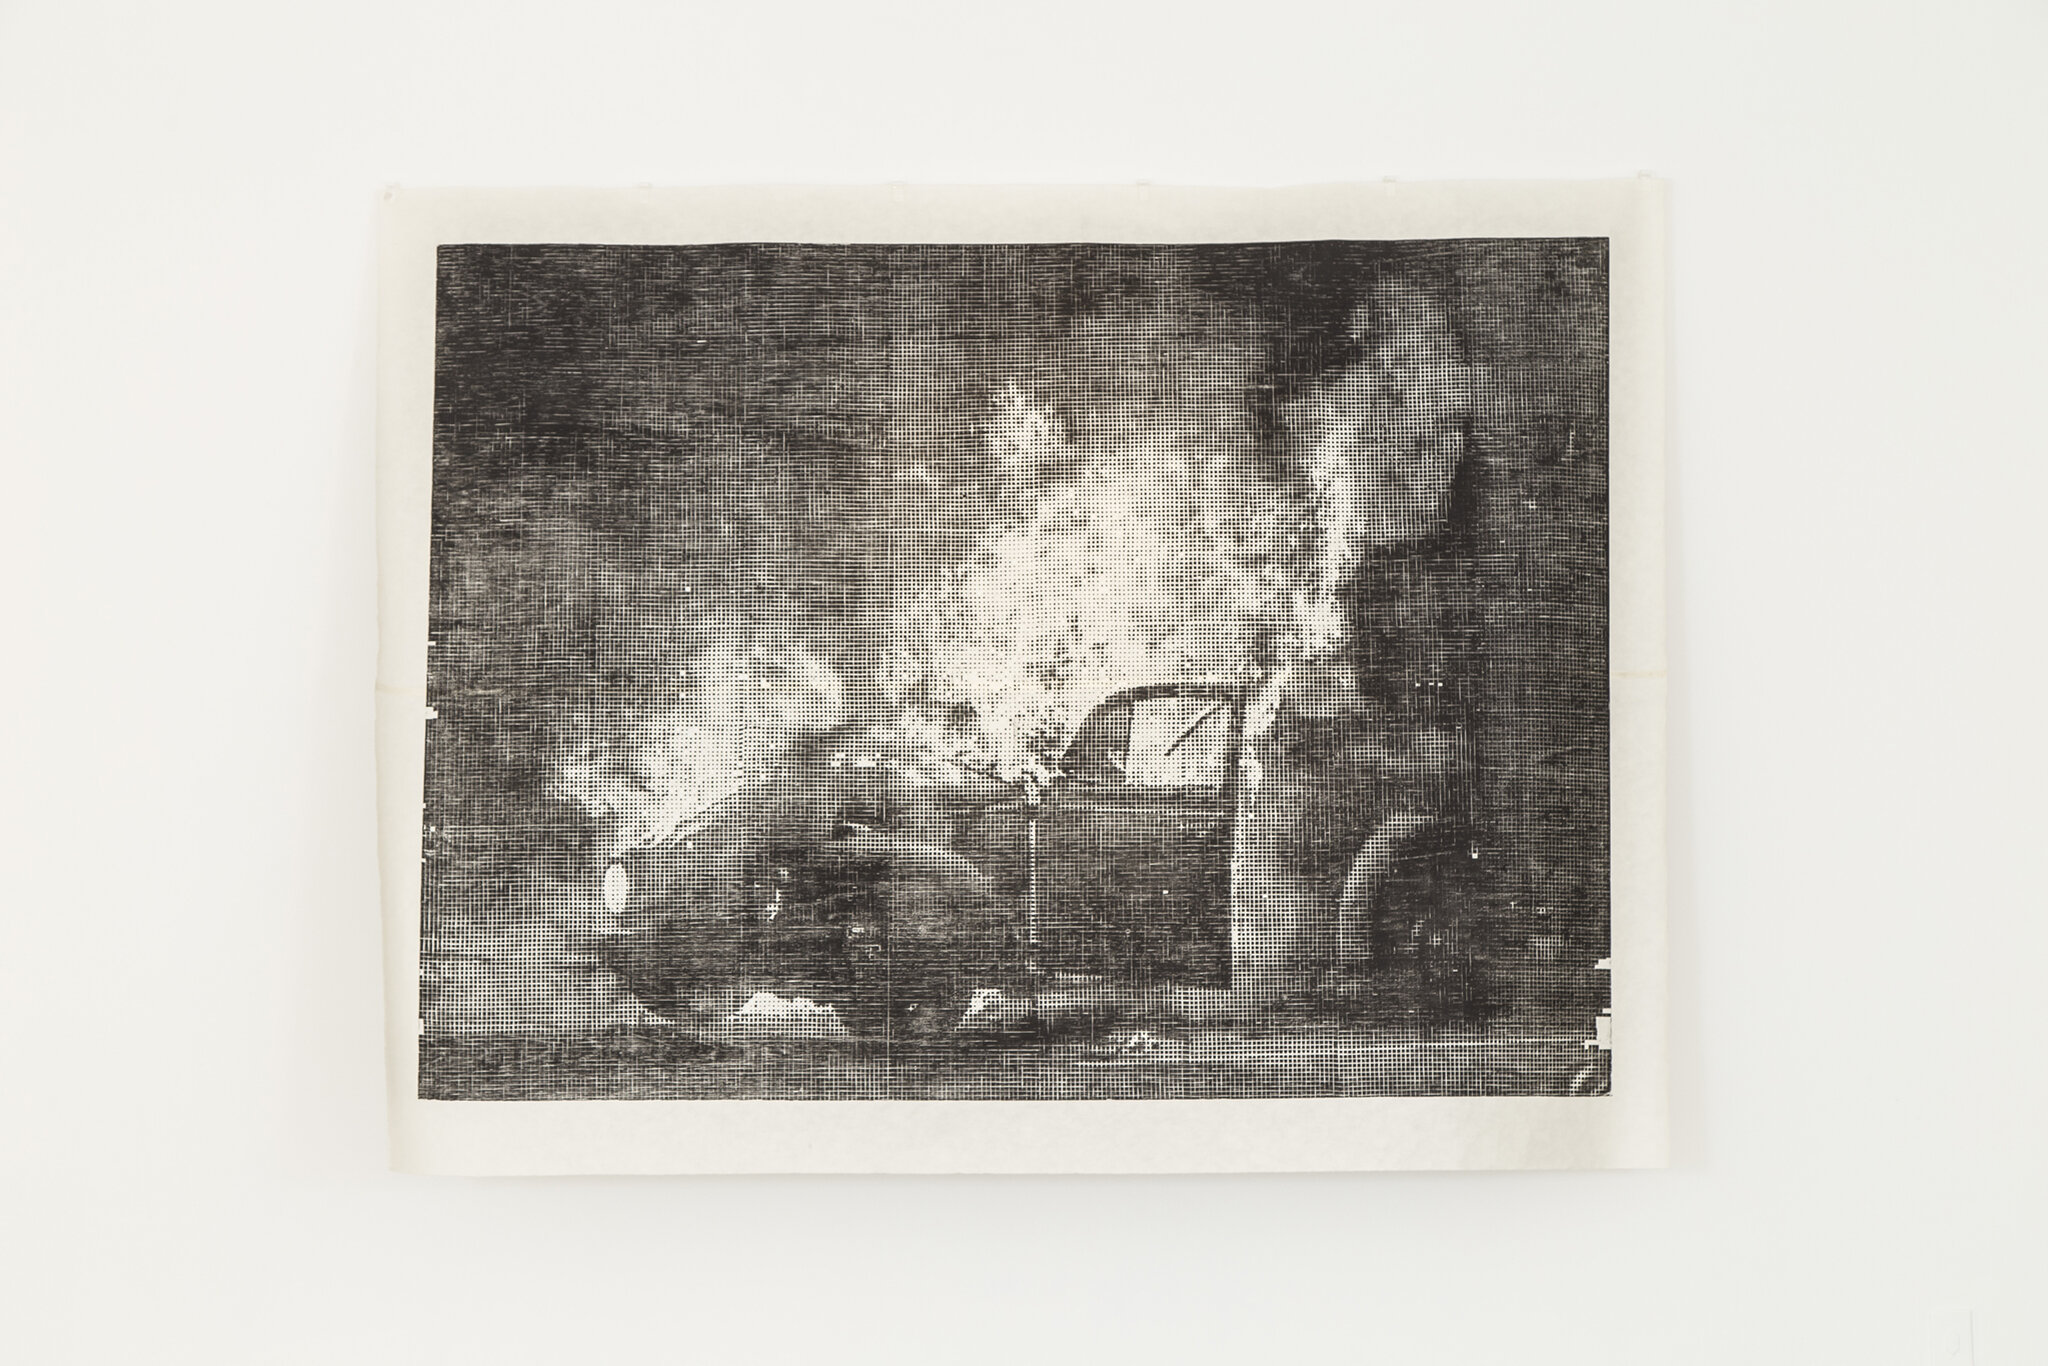 Rafael Pagatini, Manipulation, woodcut, 200 x 250 cm